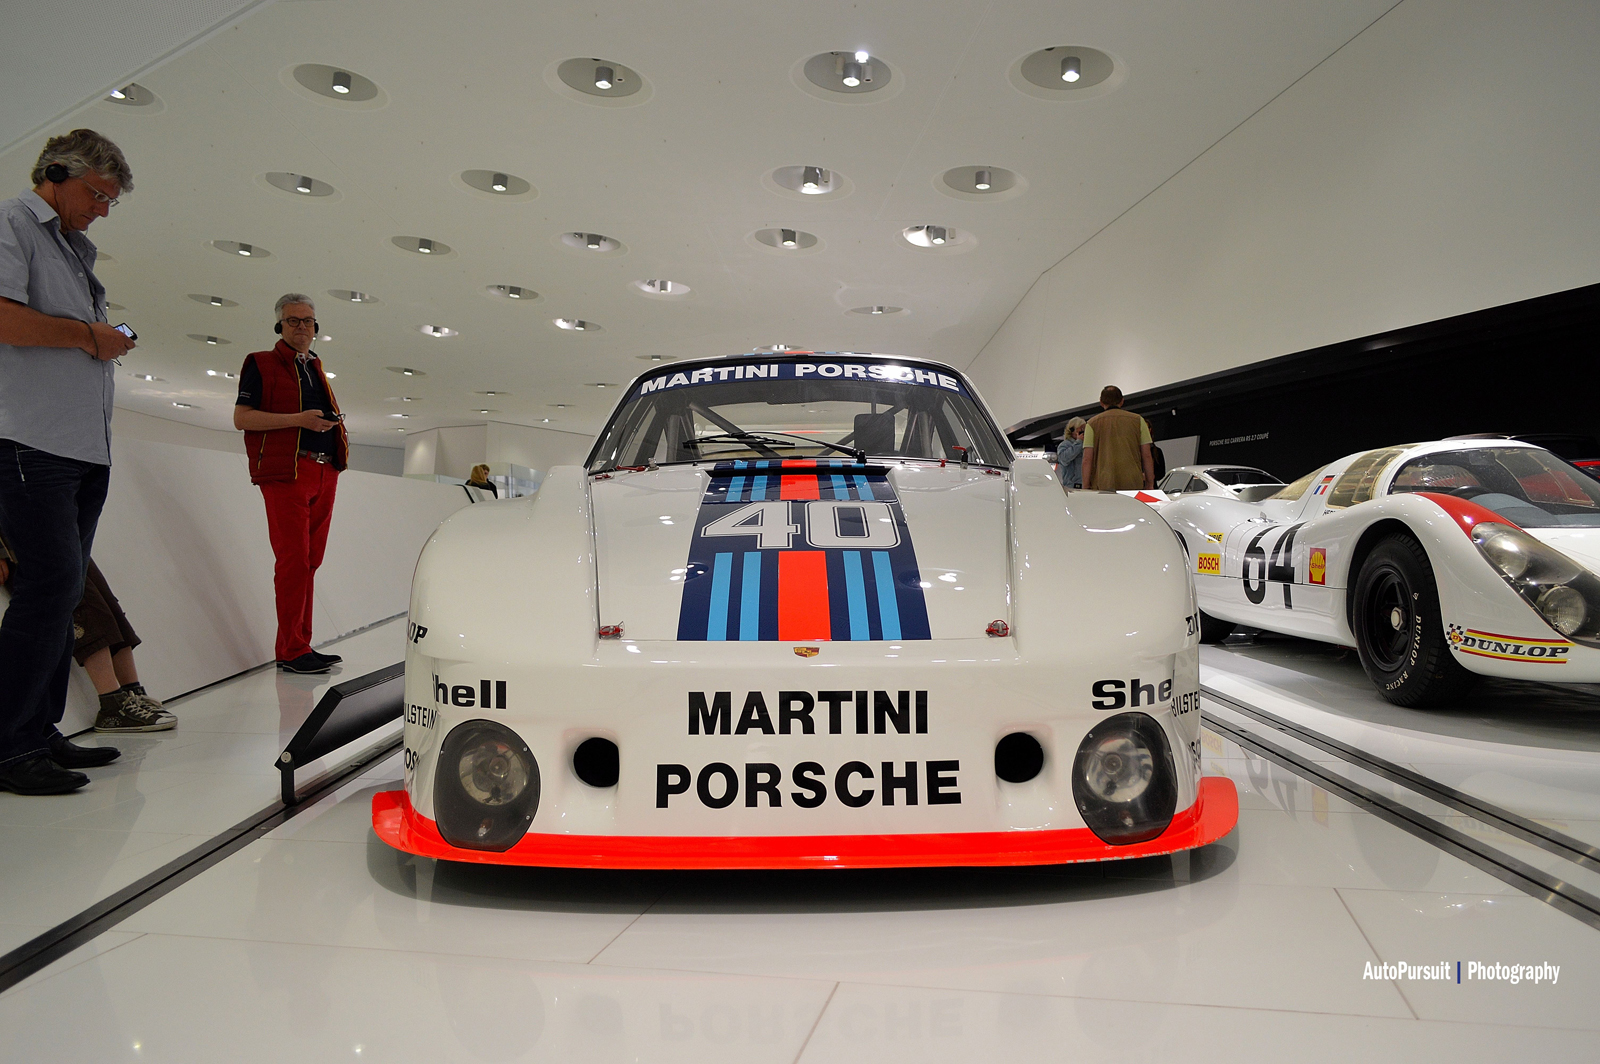 Verslag: bezoek aan het Porsche museum in Stuttgart